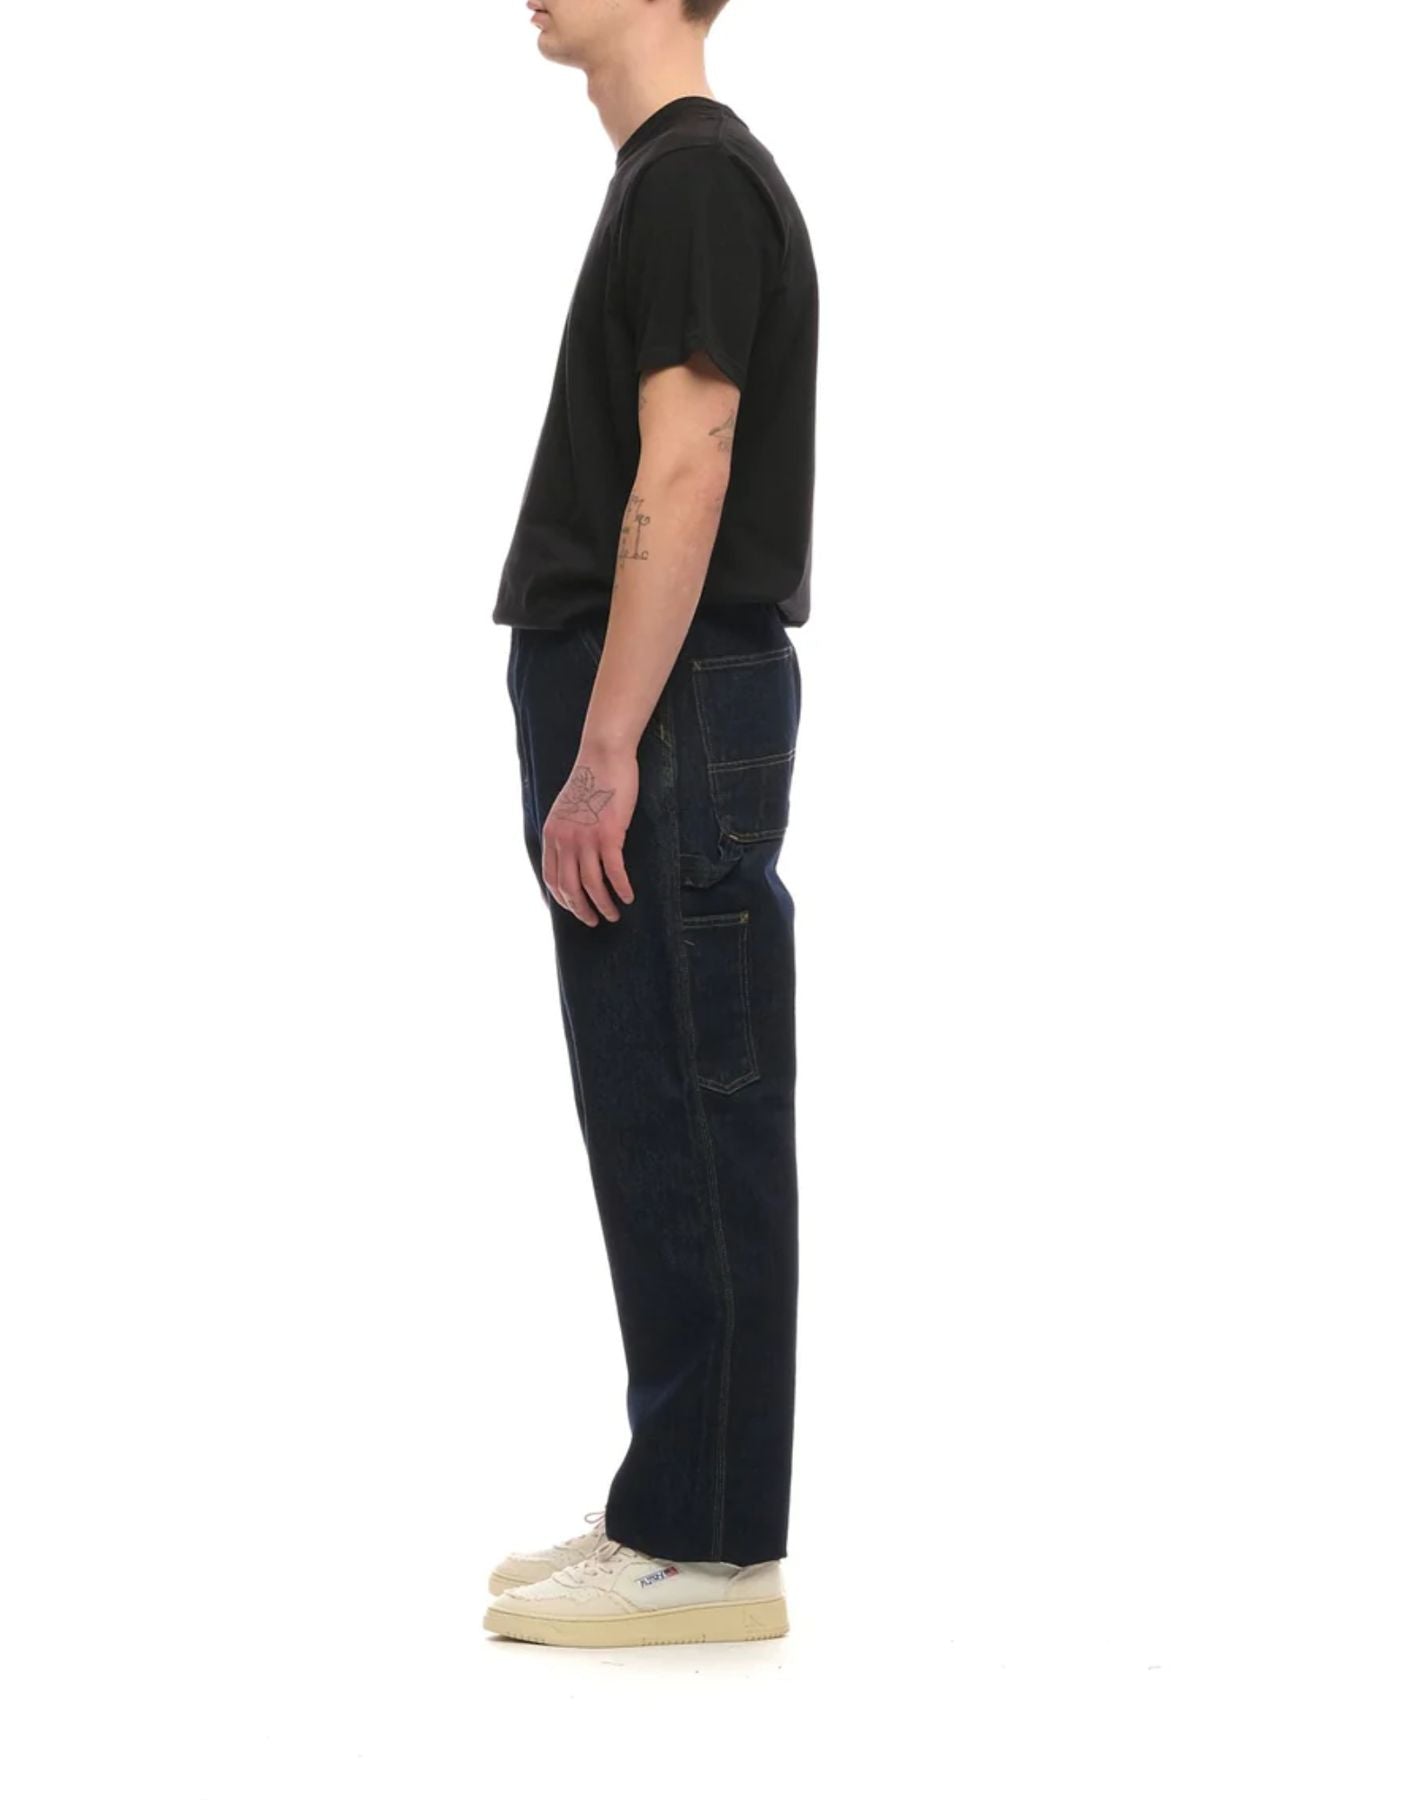 Jeans da uomo I032024 BLU CARHARTT WIP